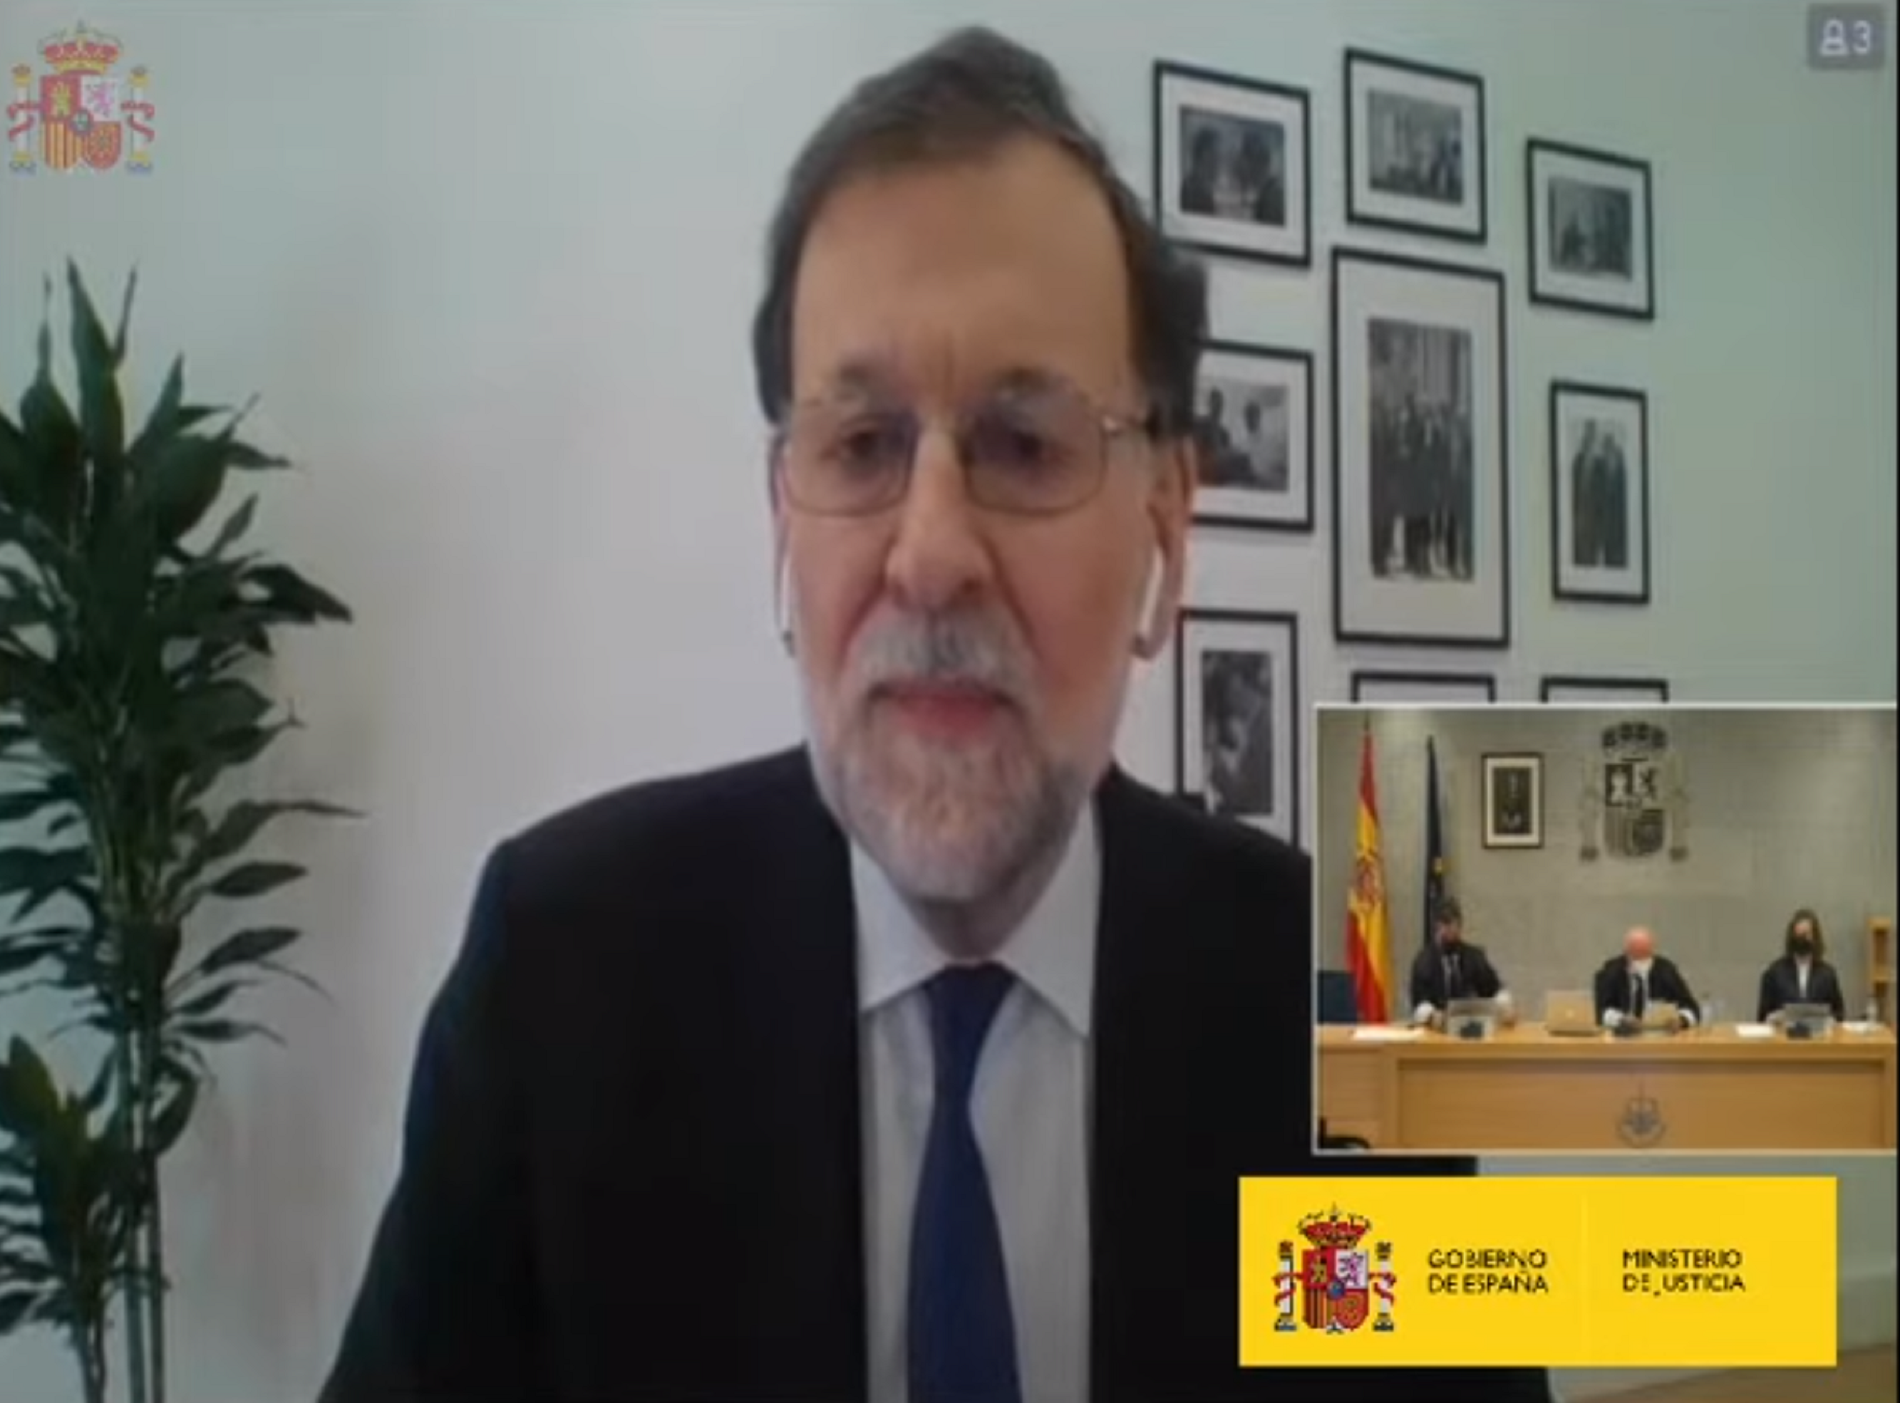 Rajoy nega totes les acusacions de Bárcenas: “És un deliri i una vergonya“